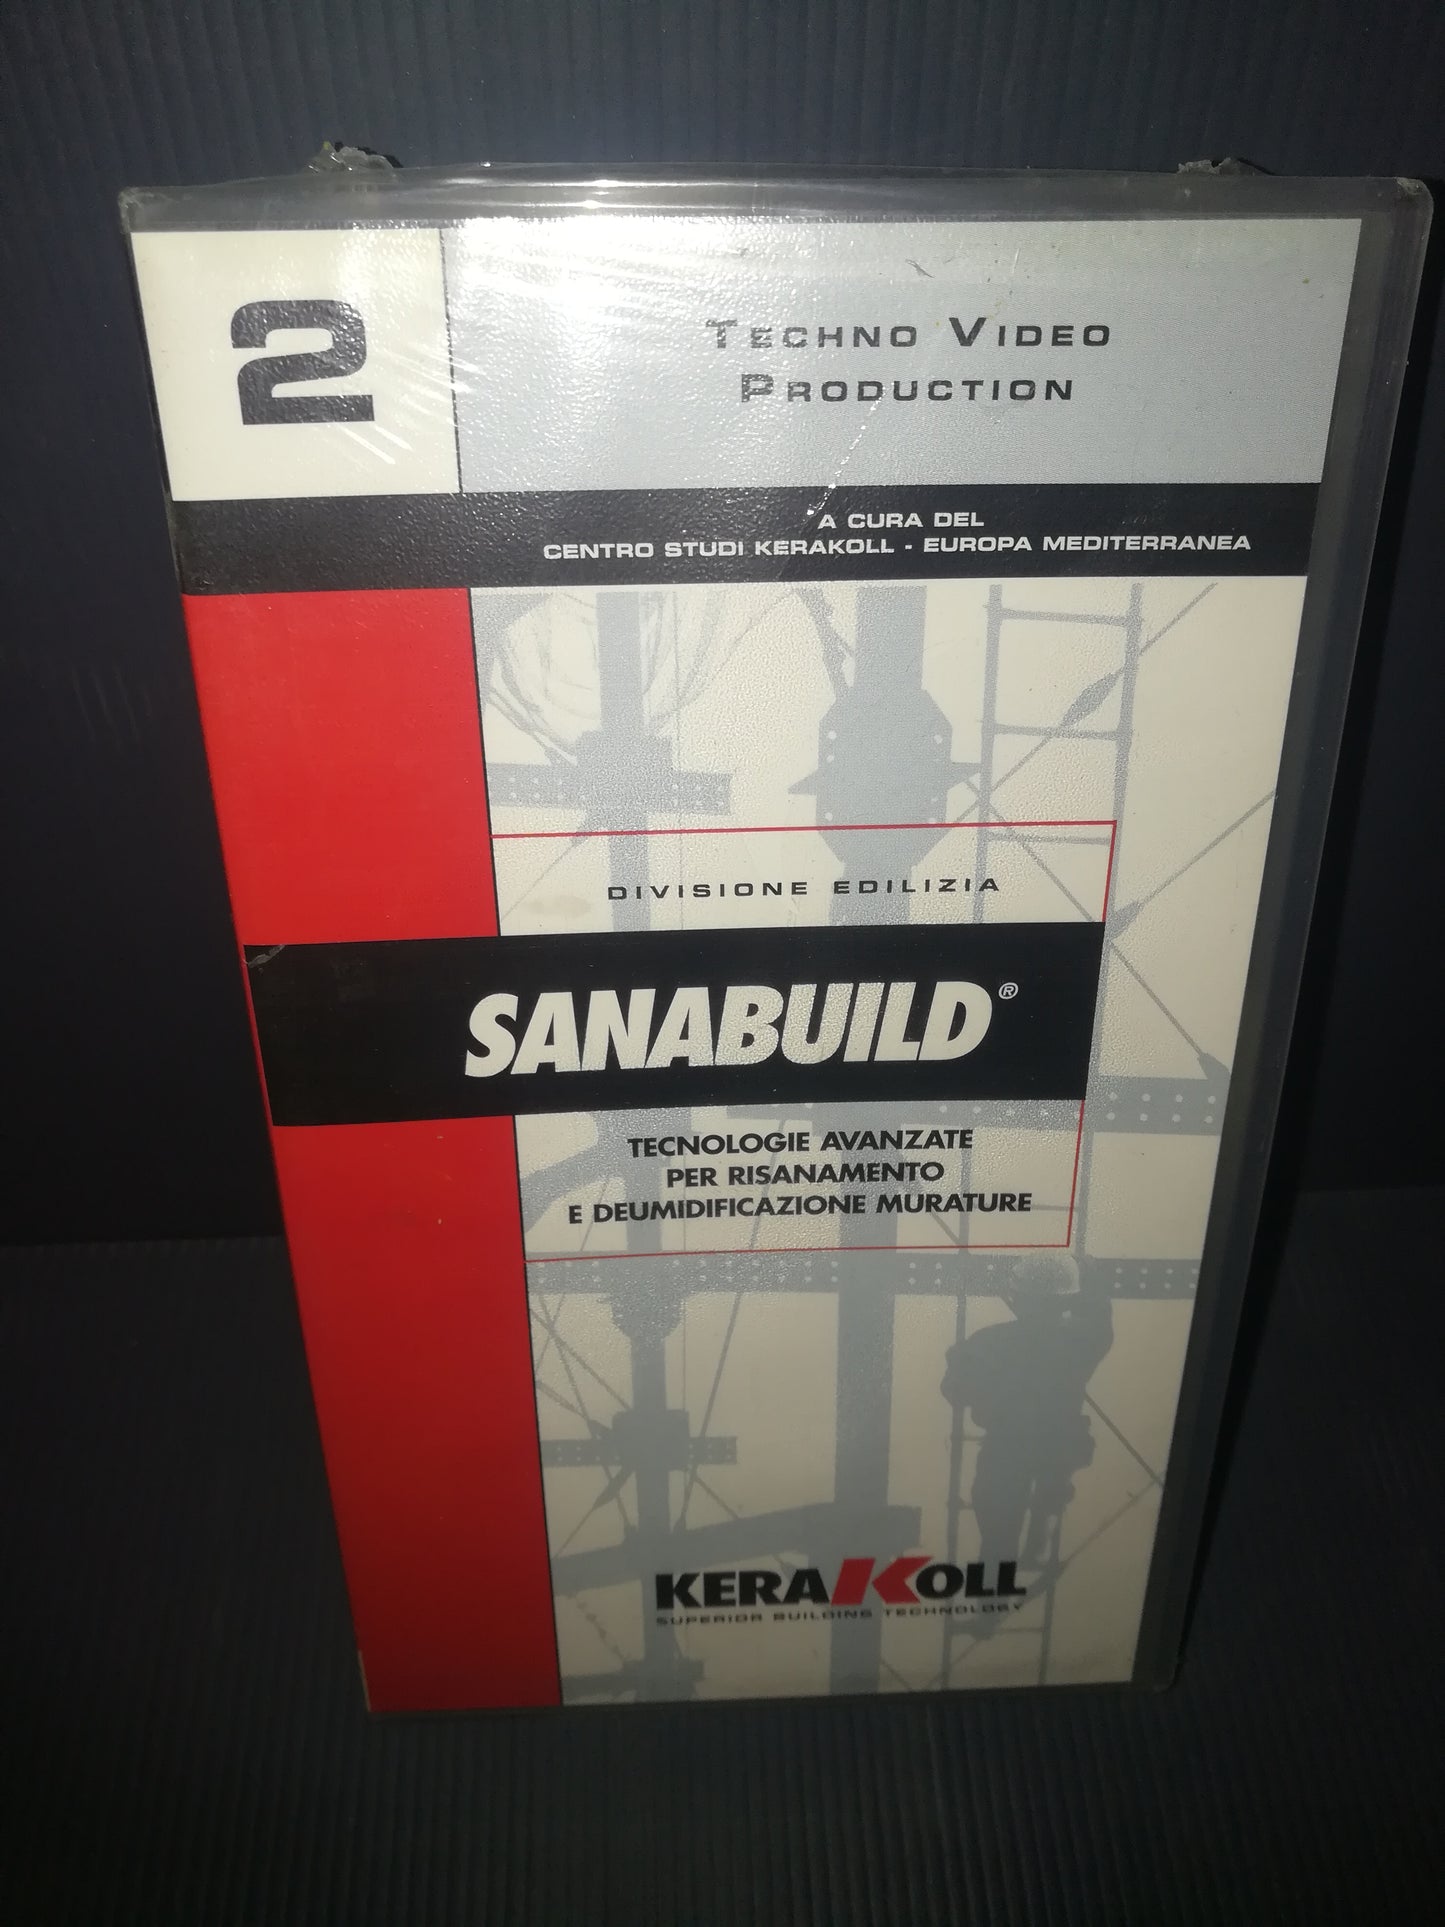 VHS Sanabuild Kerakoll

 Techno Video Production